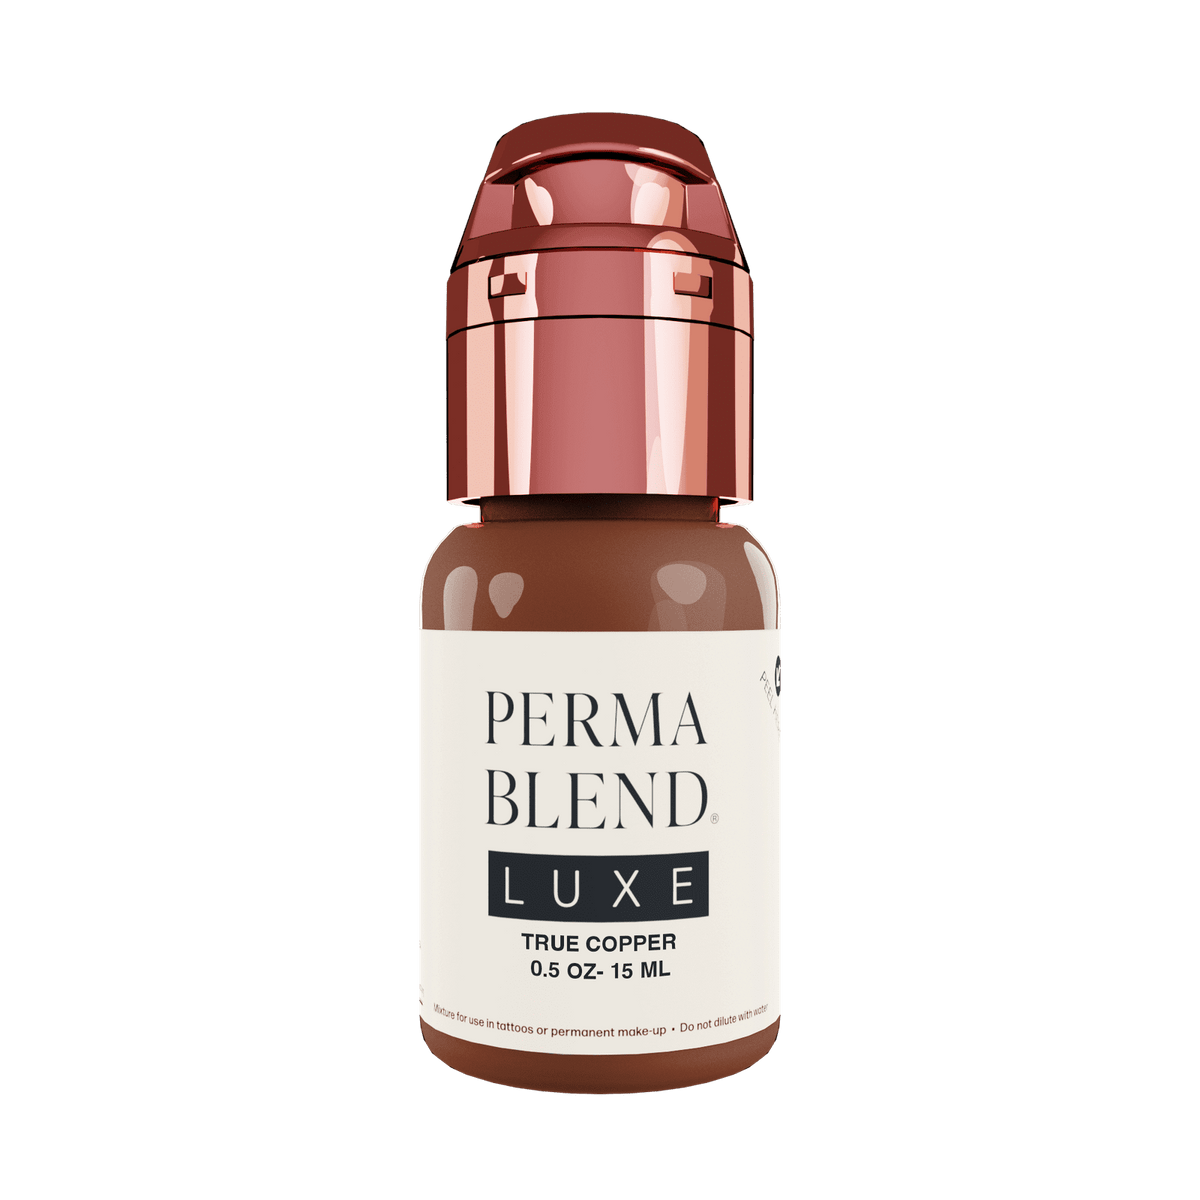 Perma Blend Luxe True Copper